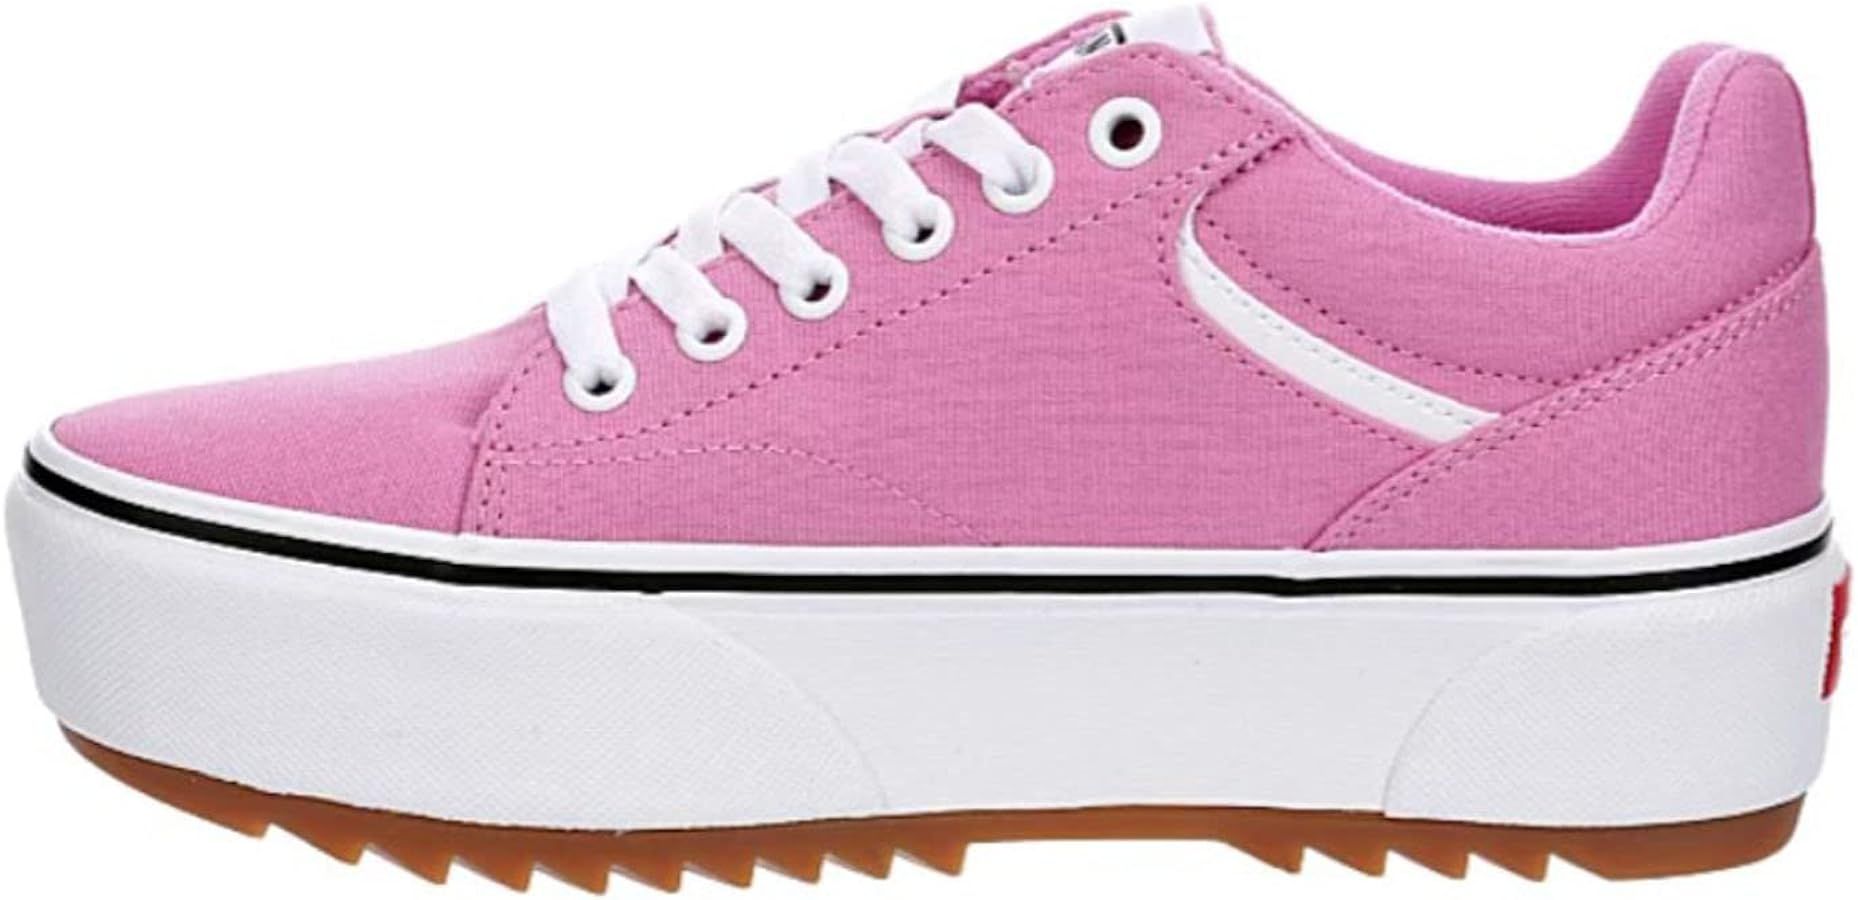 Vans Unisex Seldan Platform Canvas Sneaker - Lace up Style - Pink | Amazon (US)